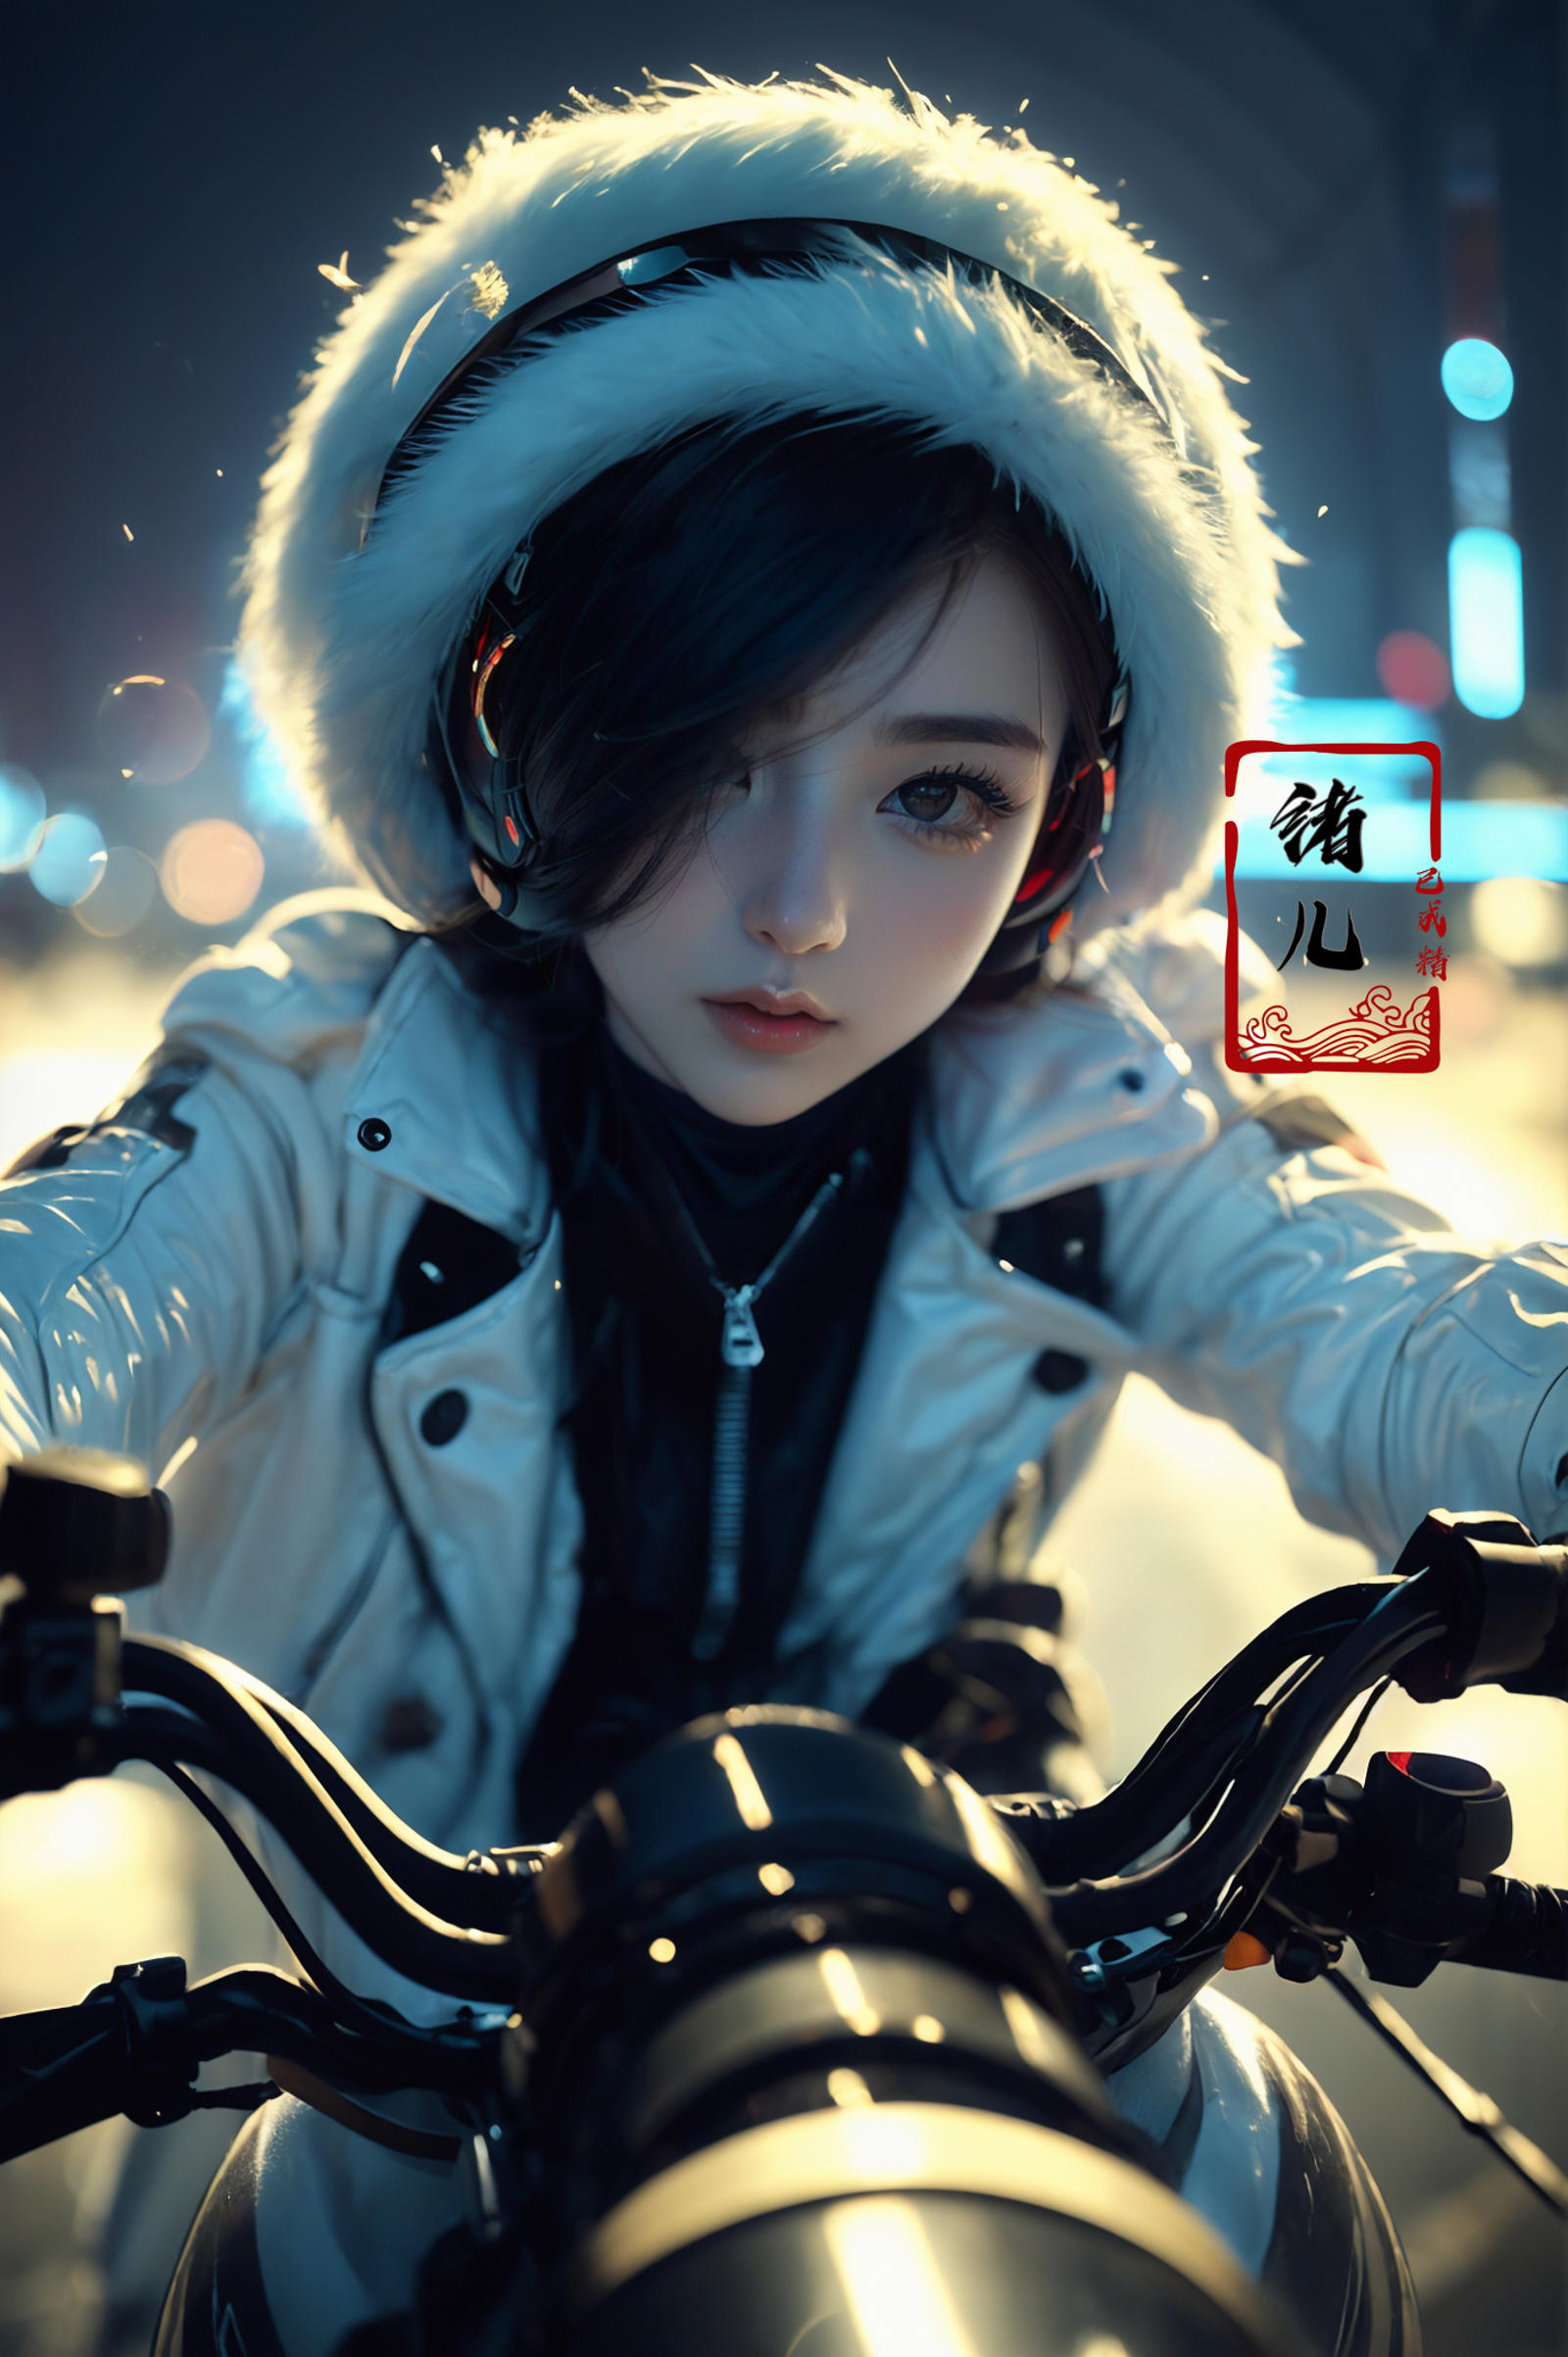 绪儿-摩托少女 xuer future motorcycle image by XRYCJ